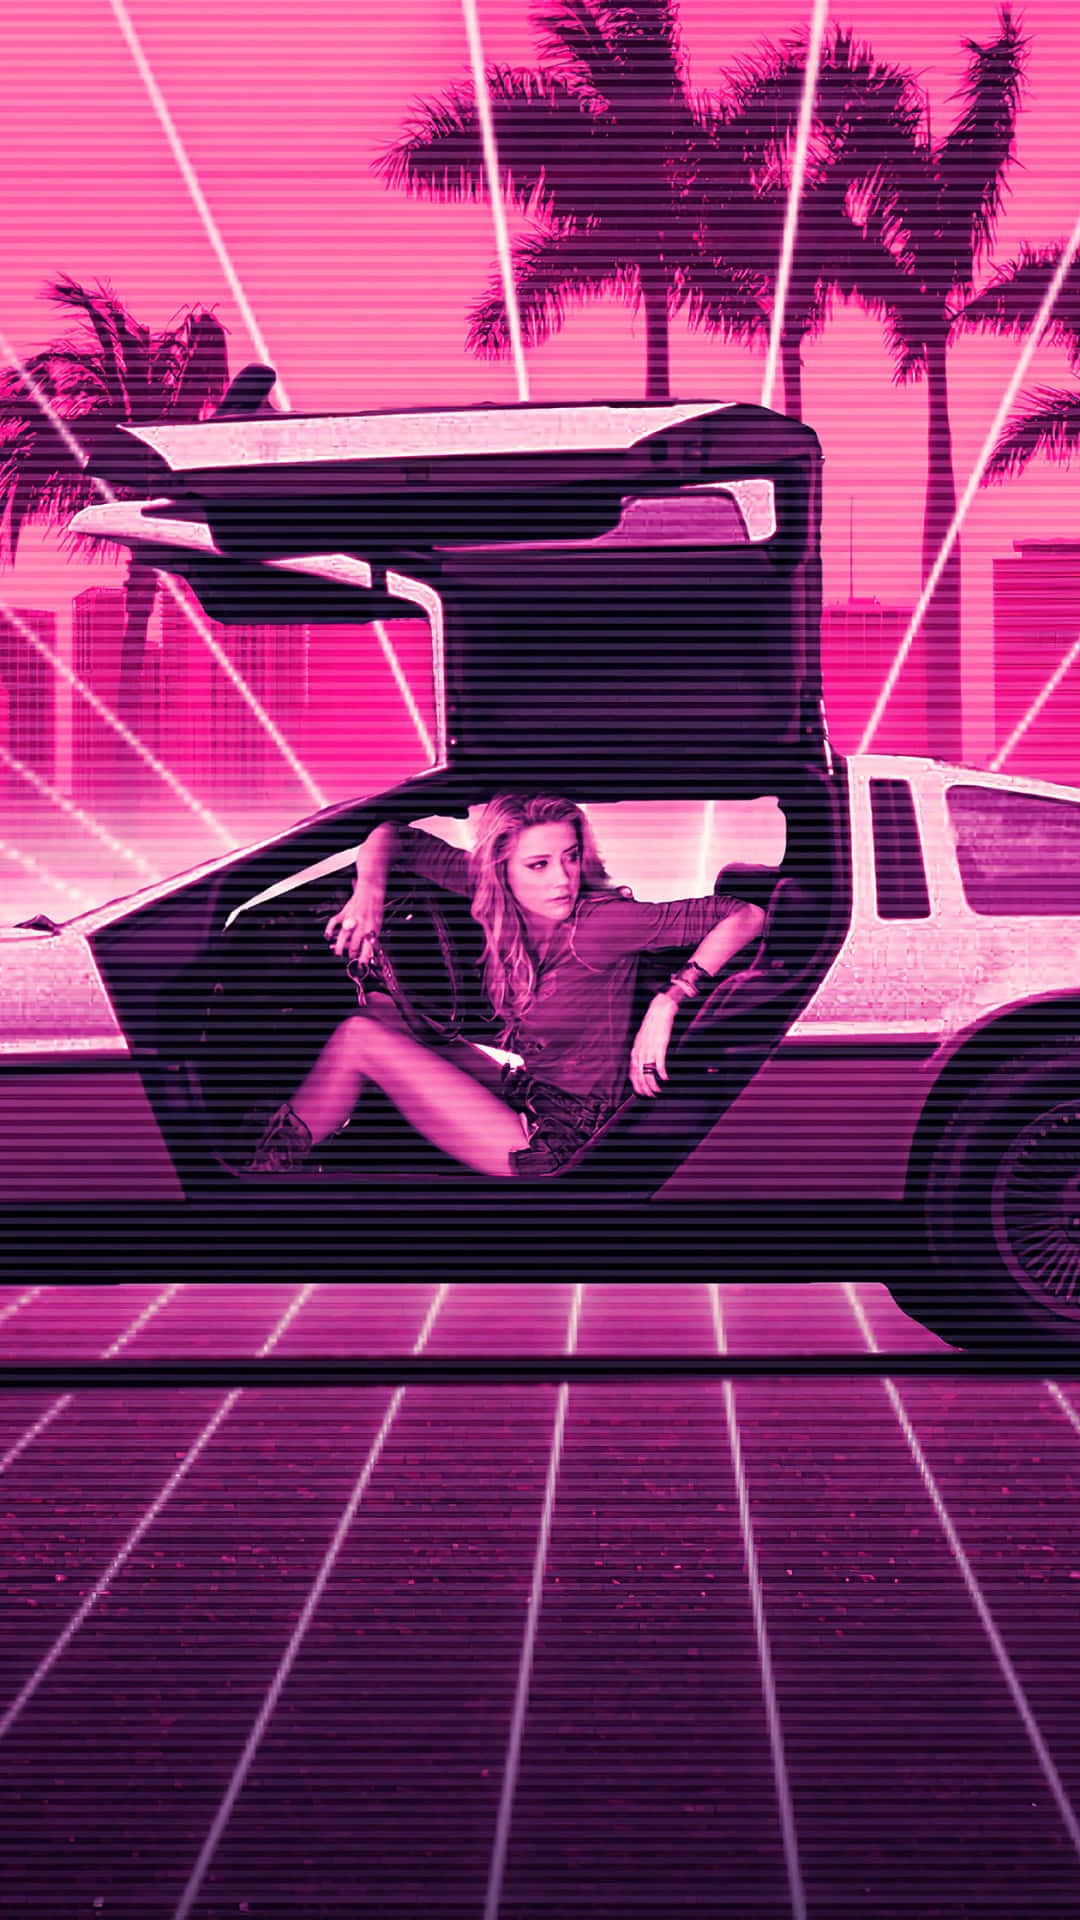 Einefrau Sitzt In Einem Pinken Auto Mit Palmen. Wallpaper